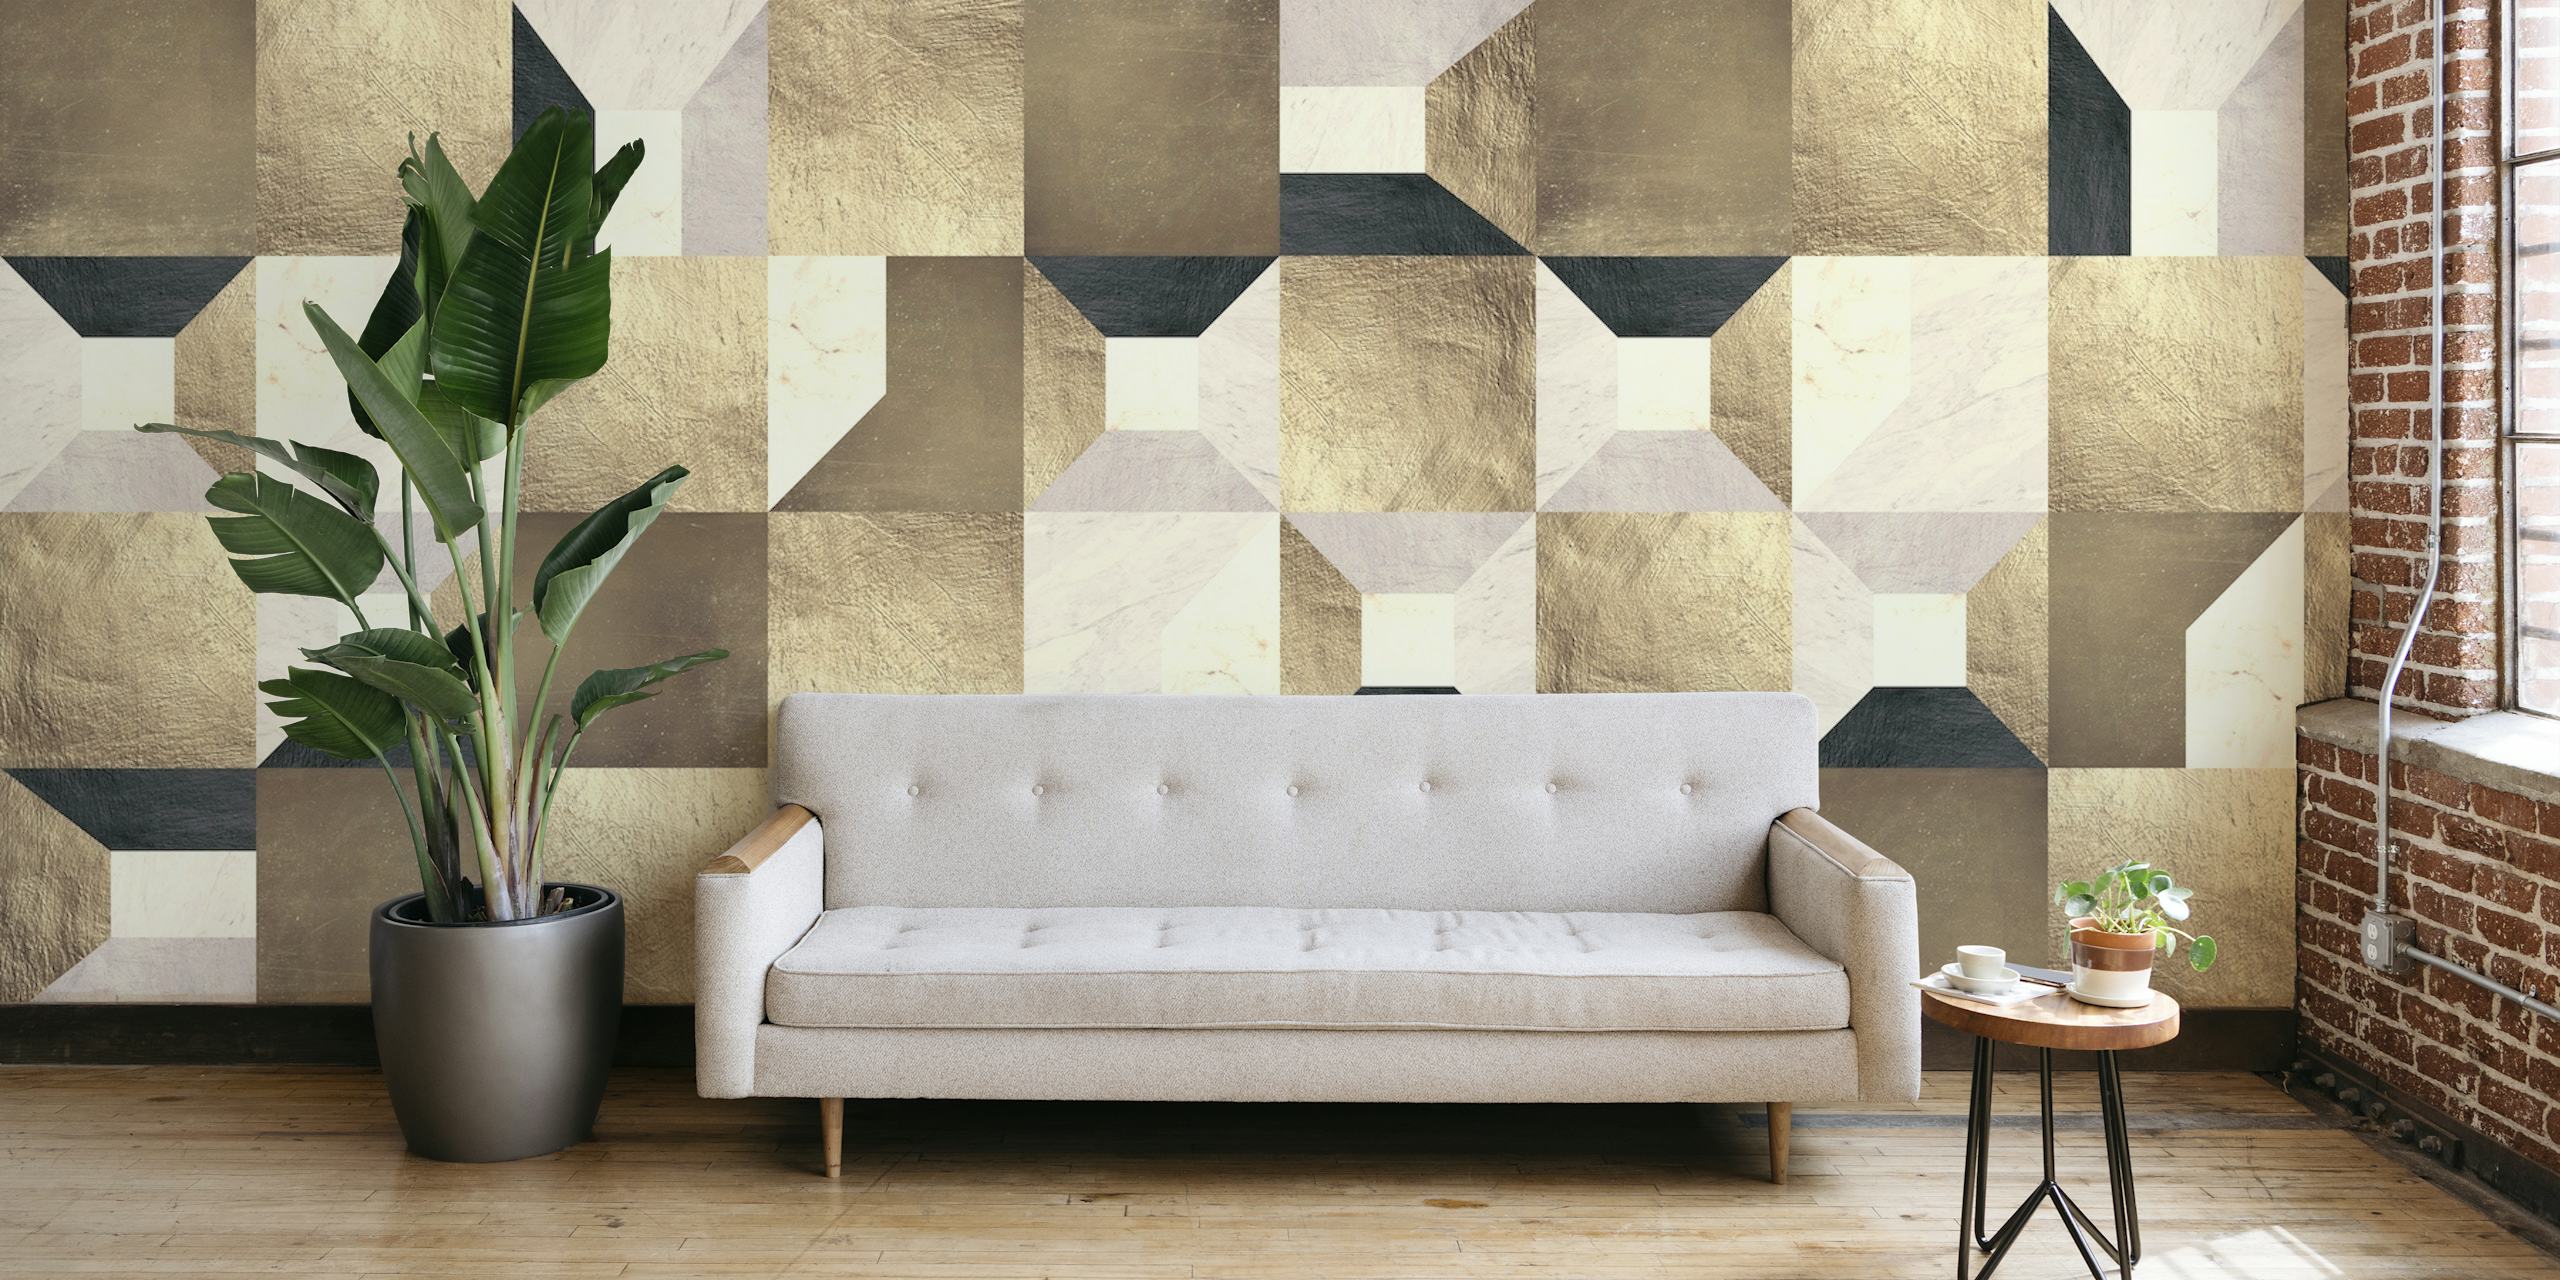 Zidna slika sa geometrijskim zlatnim kvadratima s mješavinom bež, krem i zlatnih nijansi koje tvore elegantan uzorak.